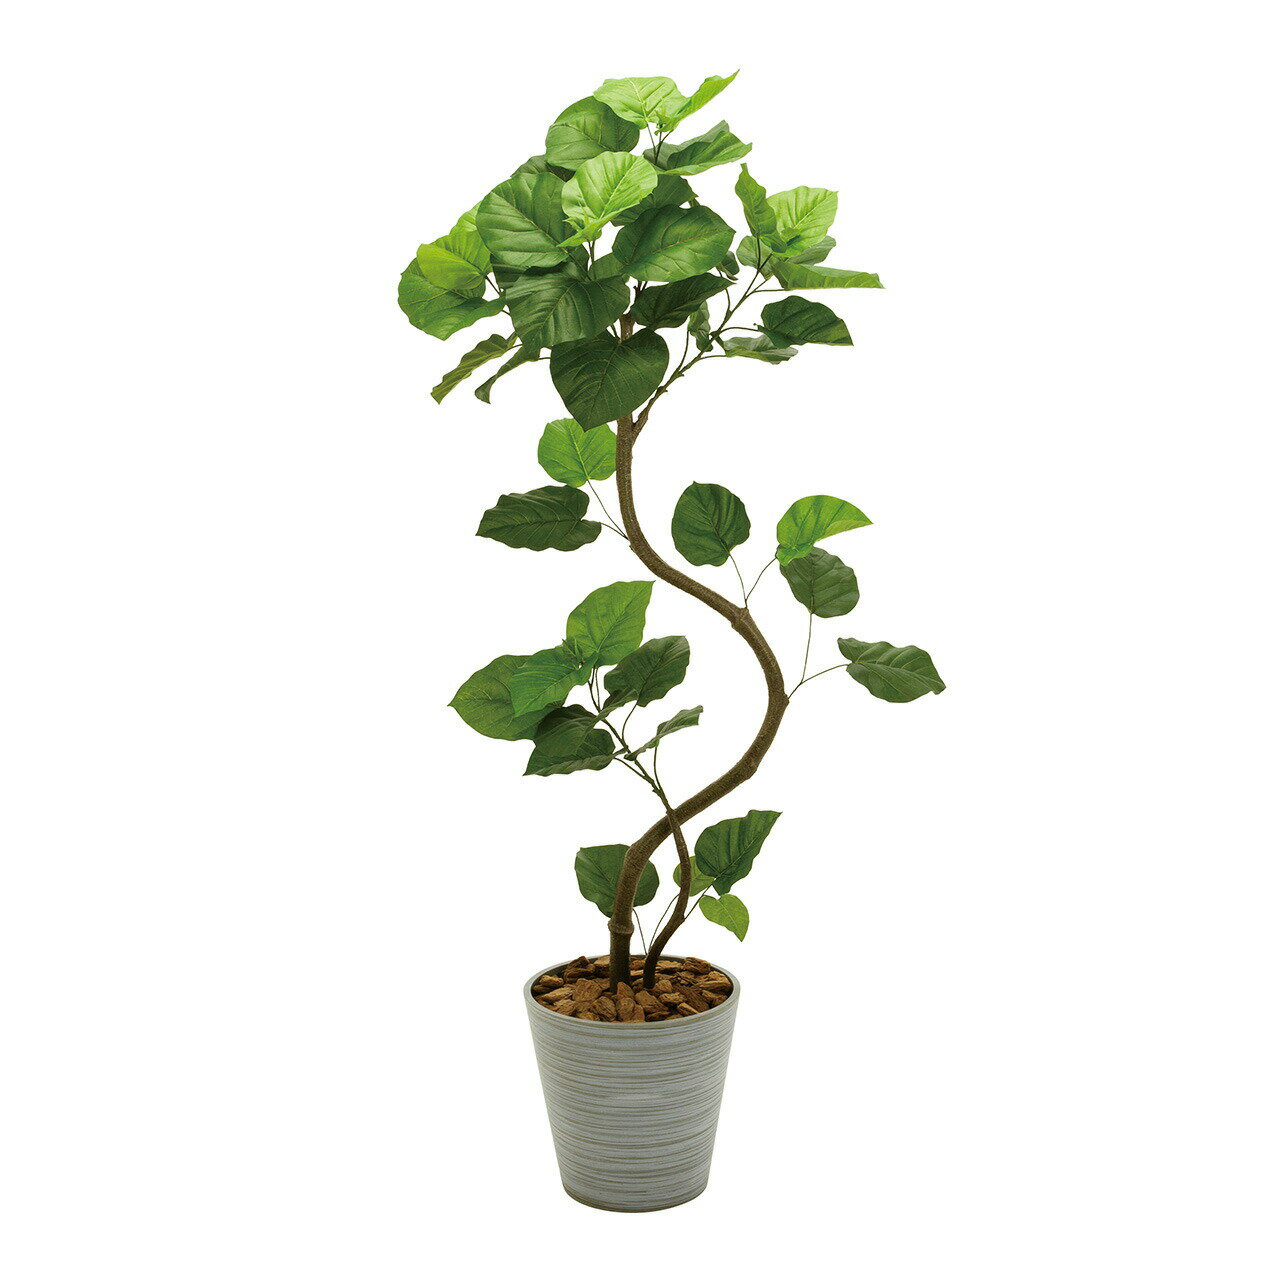 ウンベラータスパイラル5F人口観葉植物インテリアグリーンフェイクグリーンアーティフィシャル造花大型便